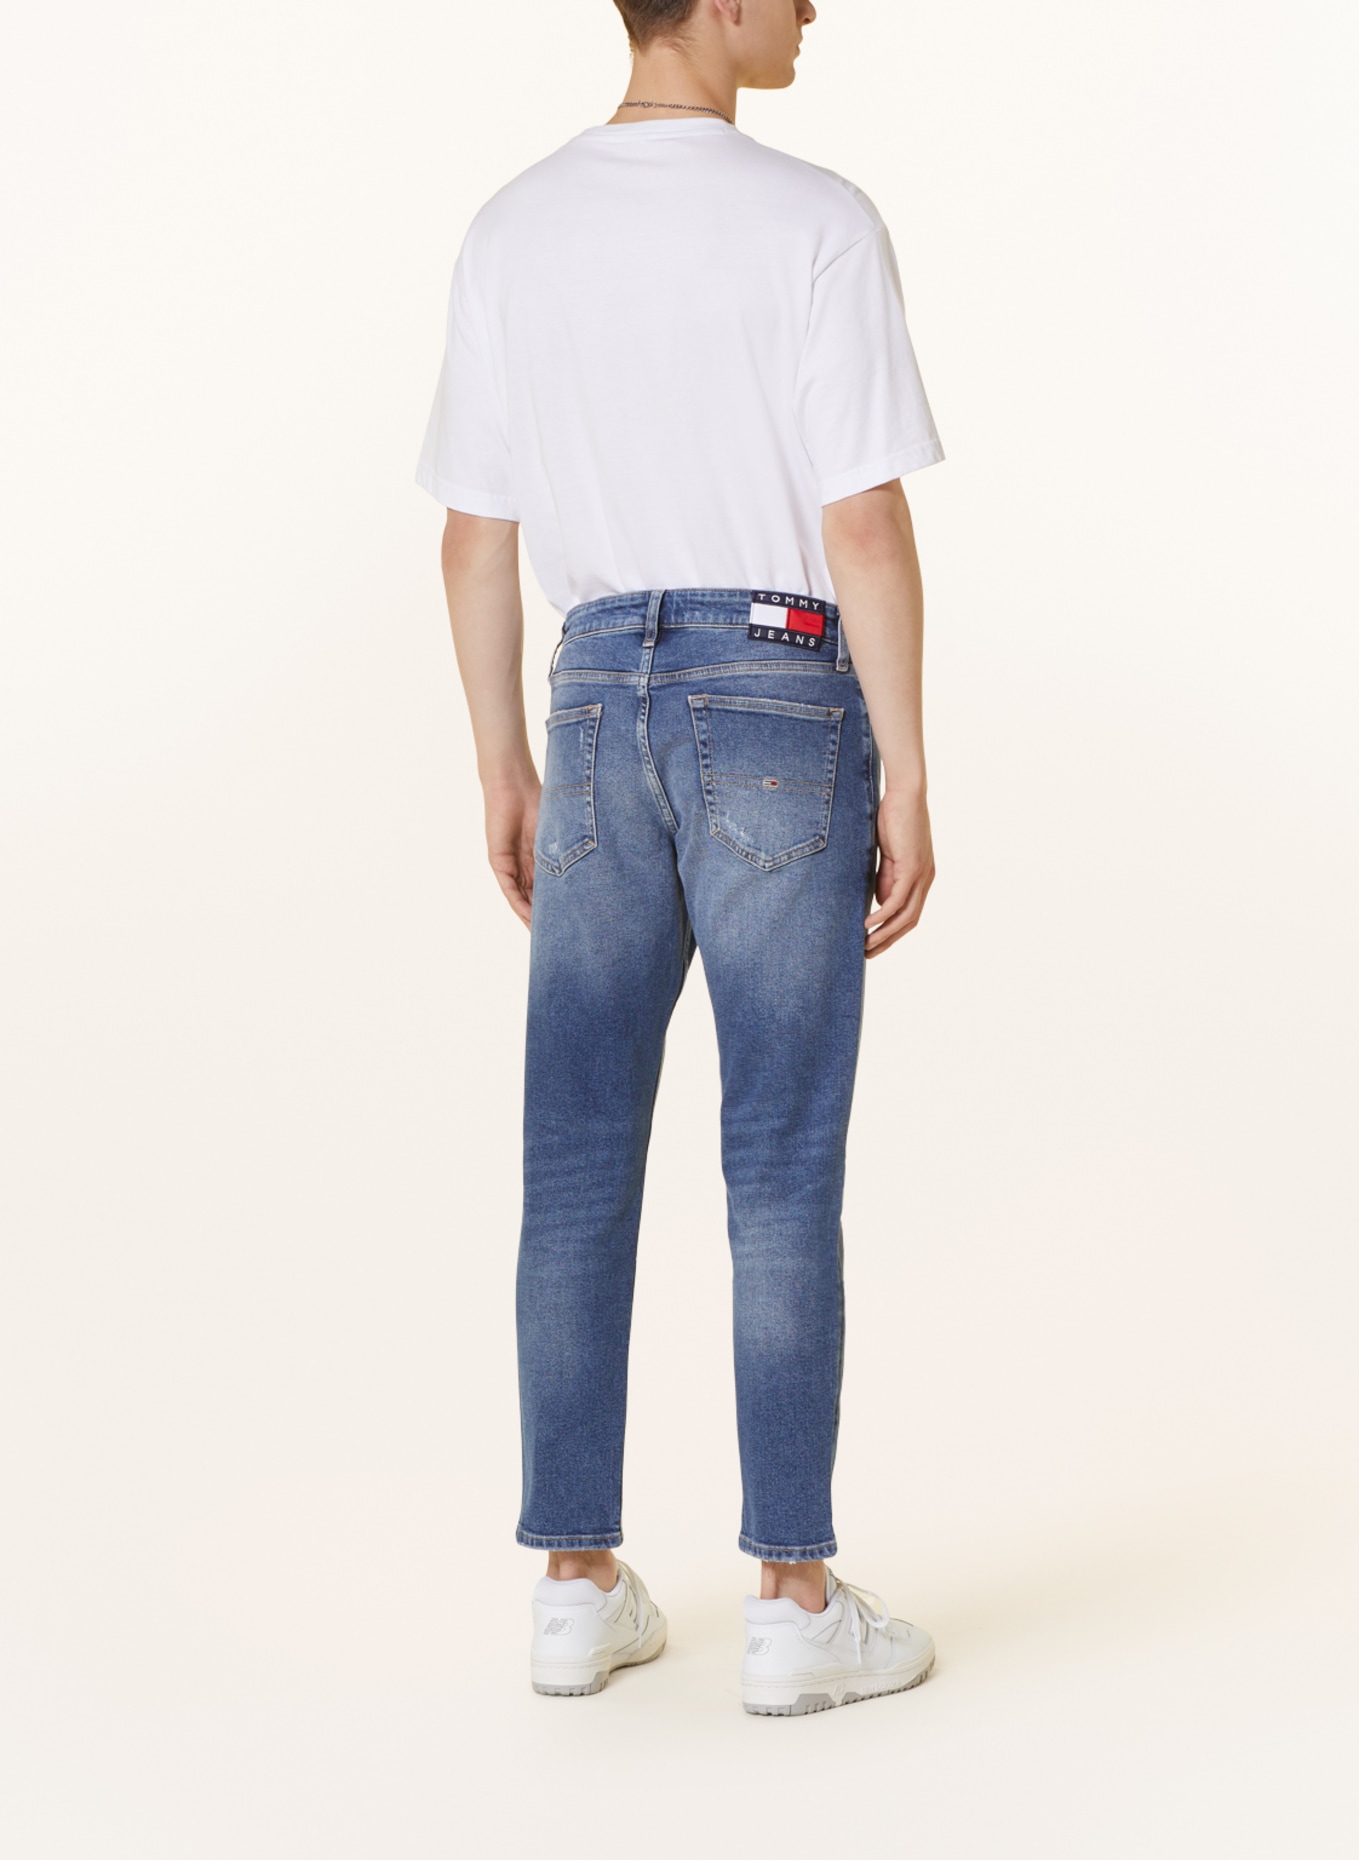 TOMMY JEANS Jeans AUSTIN Slim Fit, Farbe: 1A5 Denim Medium (Bild 3)